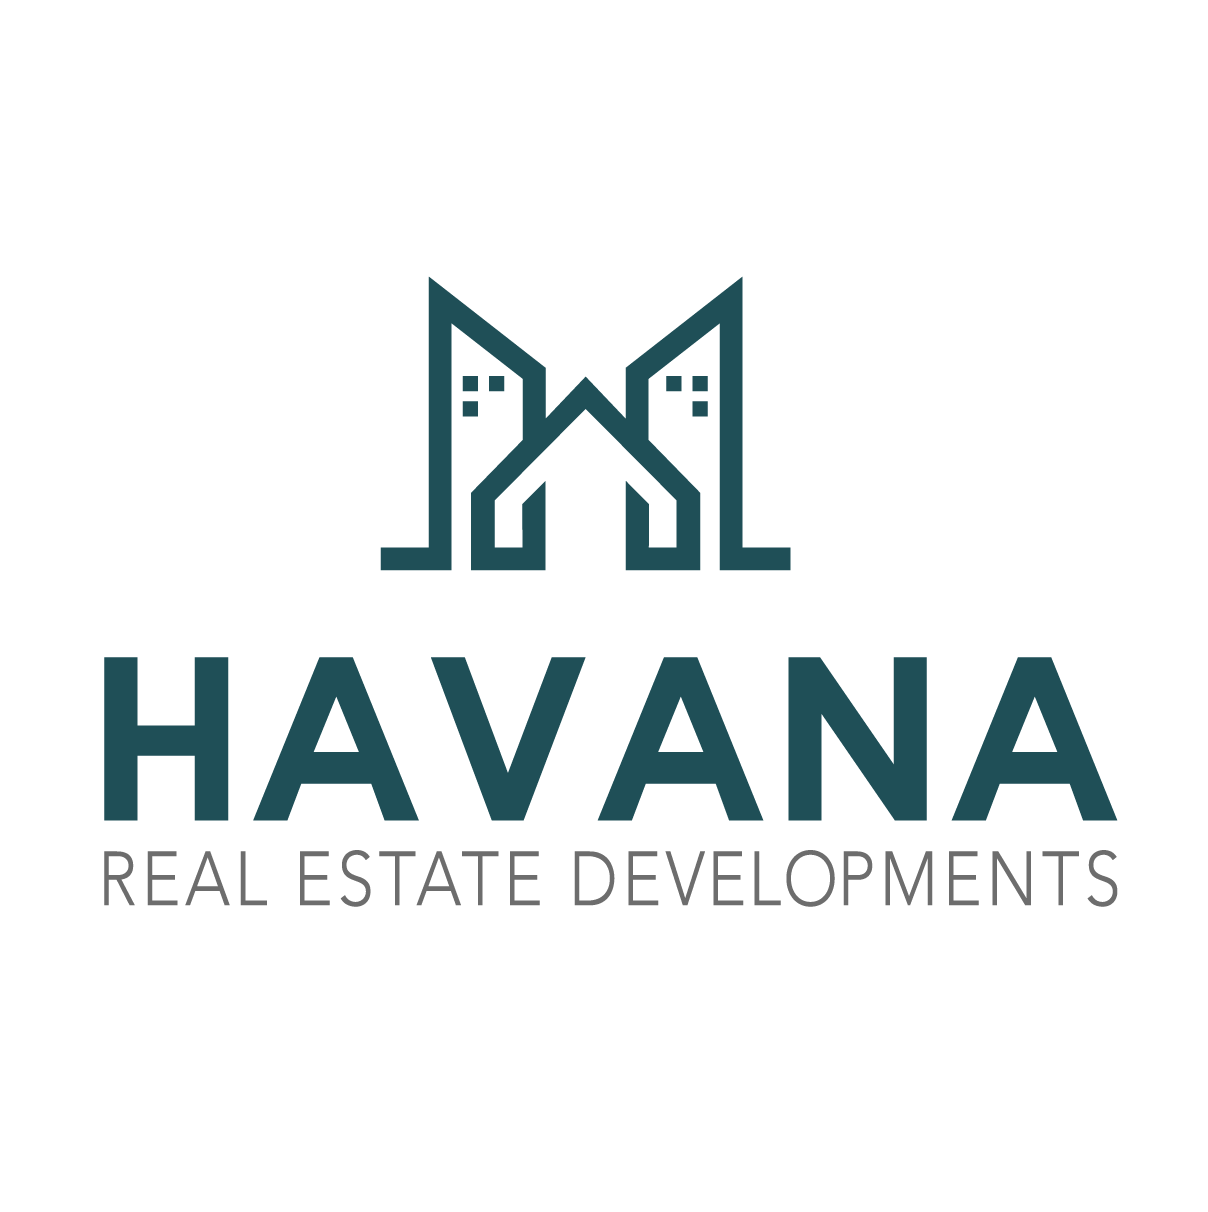 هافانا للإستثمار و التطوير العقارى - Havana developments